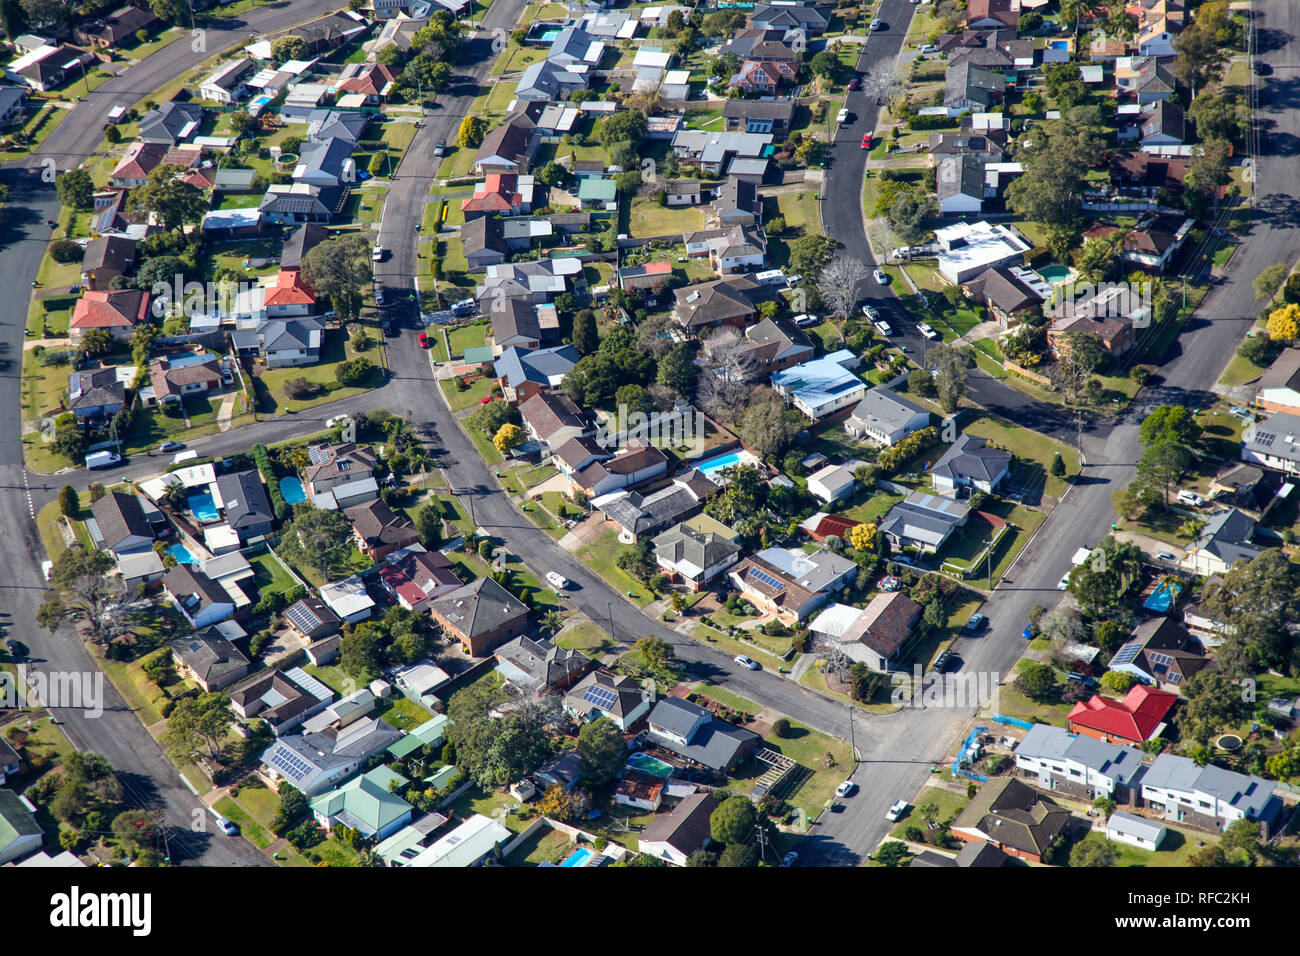 Eine Luftaufnahme von Vorort in Newcastle, NSW, Australien. Zeigt eine typische Australische Wohngebiet. Stockfoto